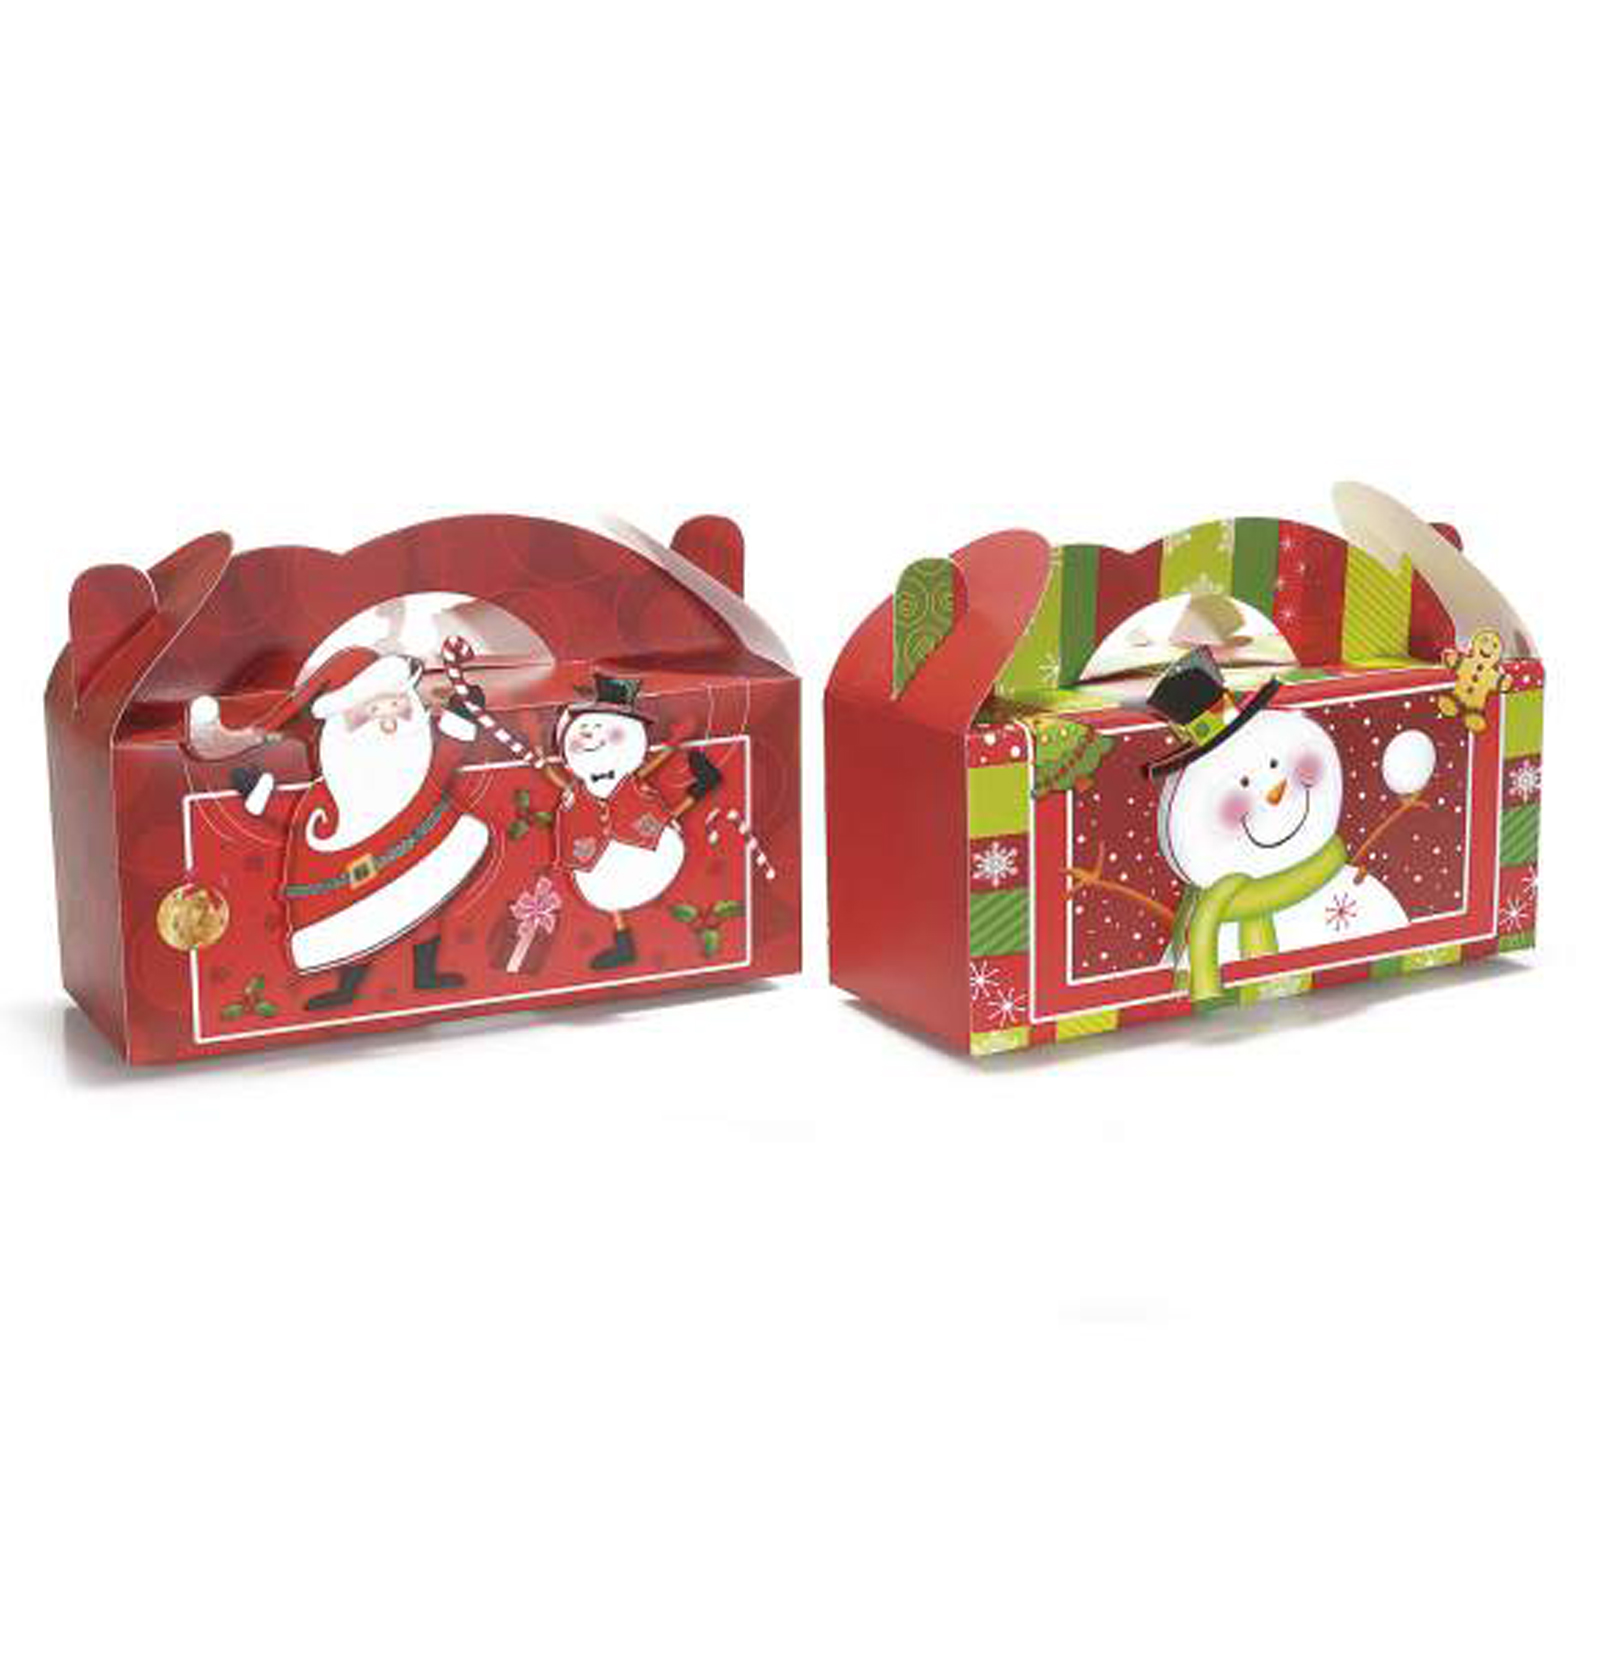 16Pz. Scatola per pacco regalo natalizia in carta colorata con personaggi  natalizi 3D cm 25x10x11 H, Scatole Discount.it - Trasparenti, in cartone,  portabottiglie, portaconfetti, nastri, bomboniere e ragali